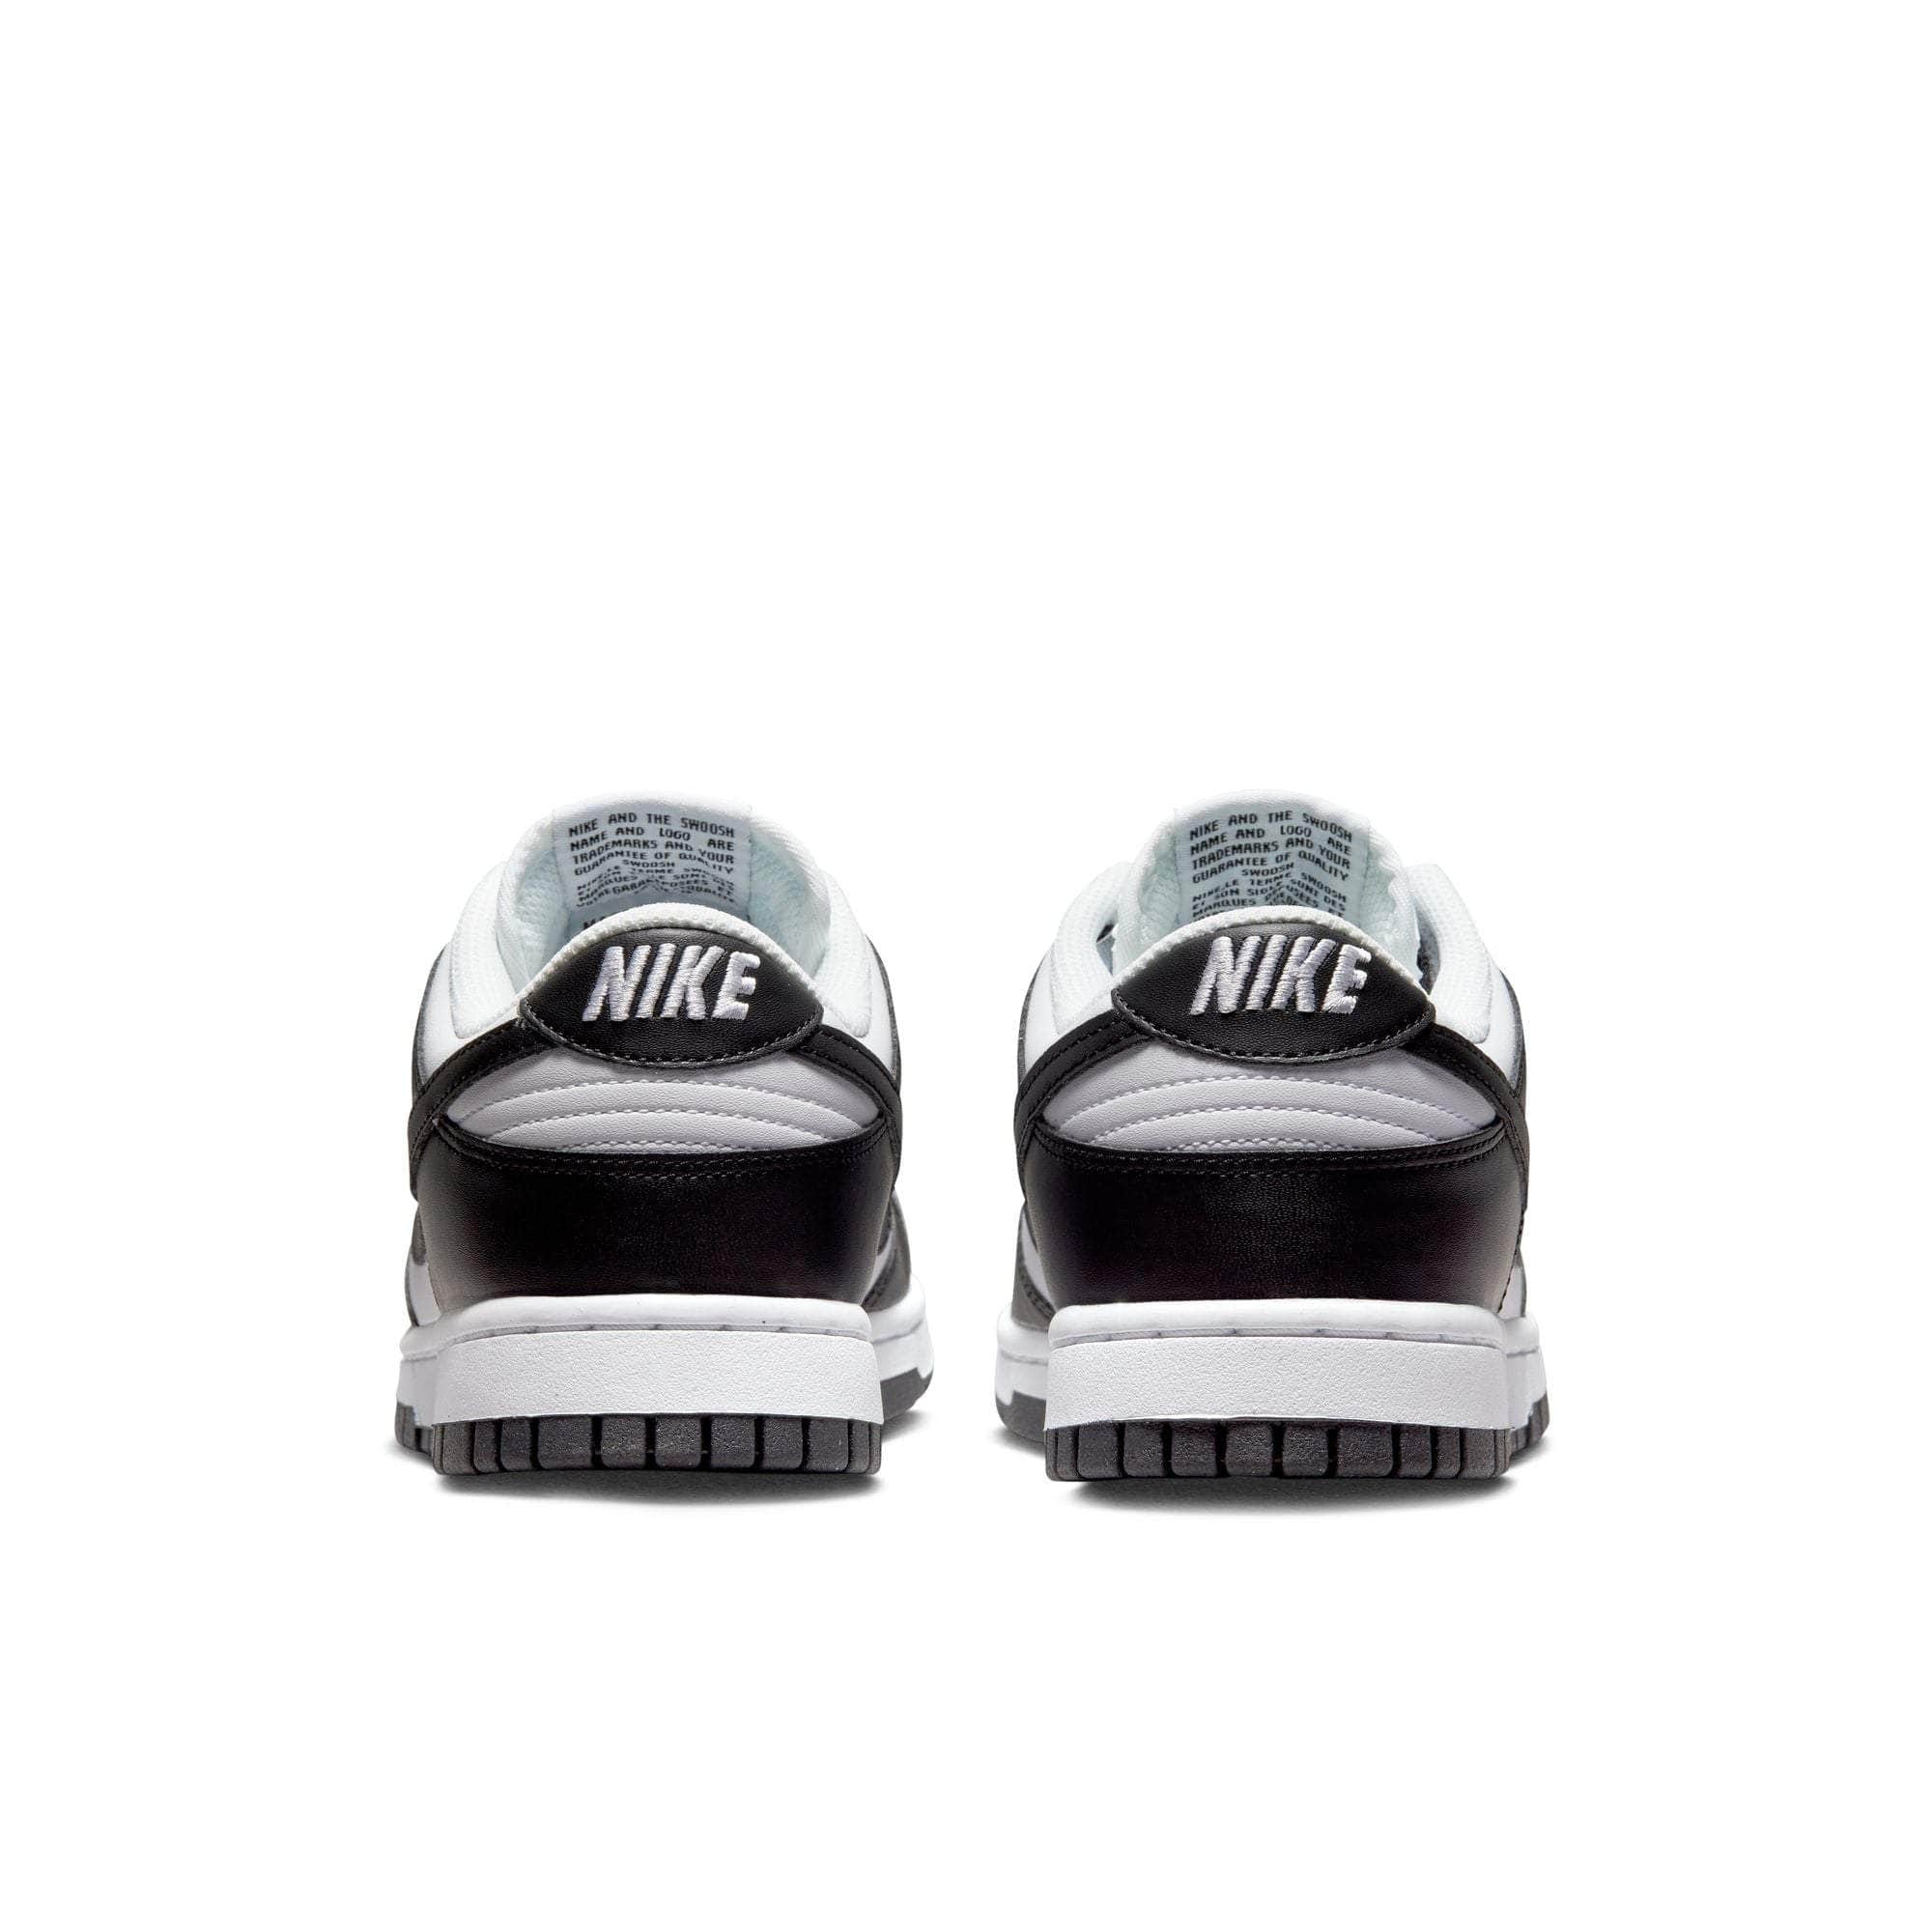 Nike FOOTWEAR Nike Dunk Low "Next Nature White Black Panda" - Women's